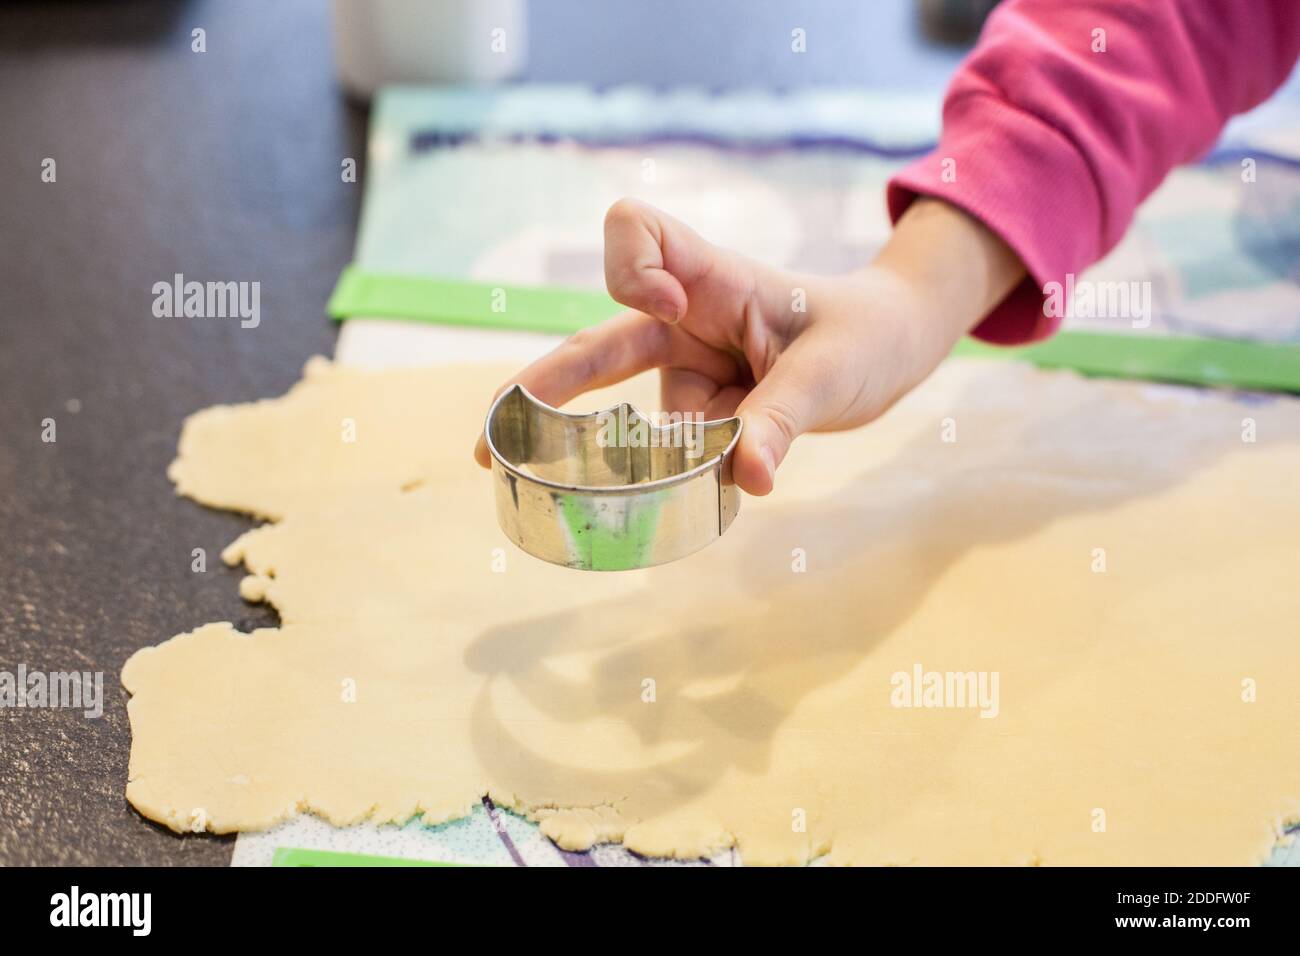 Bamberg, Germania 22 novembre 2020: Symbolbilder - 2020 - dalla pasta fatta in casa, che viene arrotolata su una superficie, una mano del bambino taglia i biscotti con una taglierina. | utilizzo in tutto il mondo Foto Stock